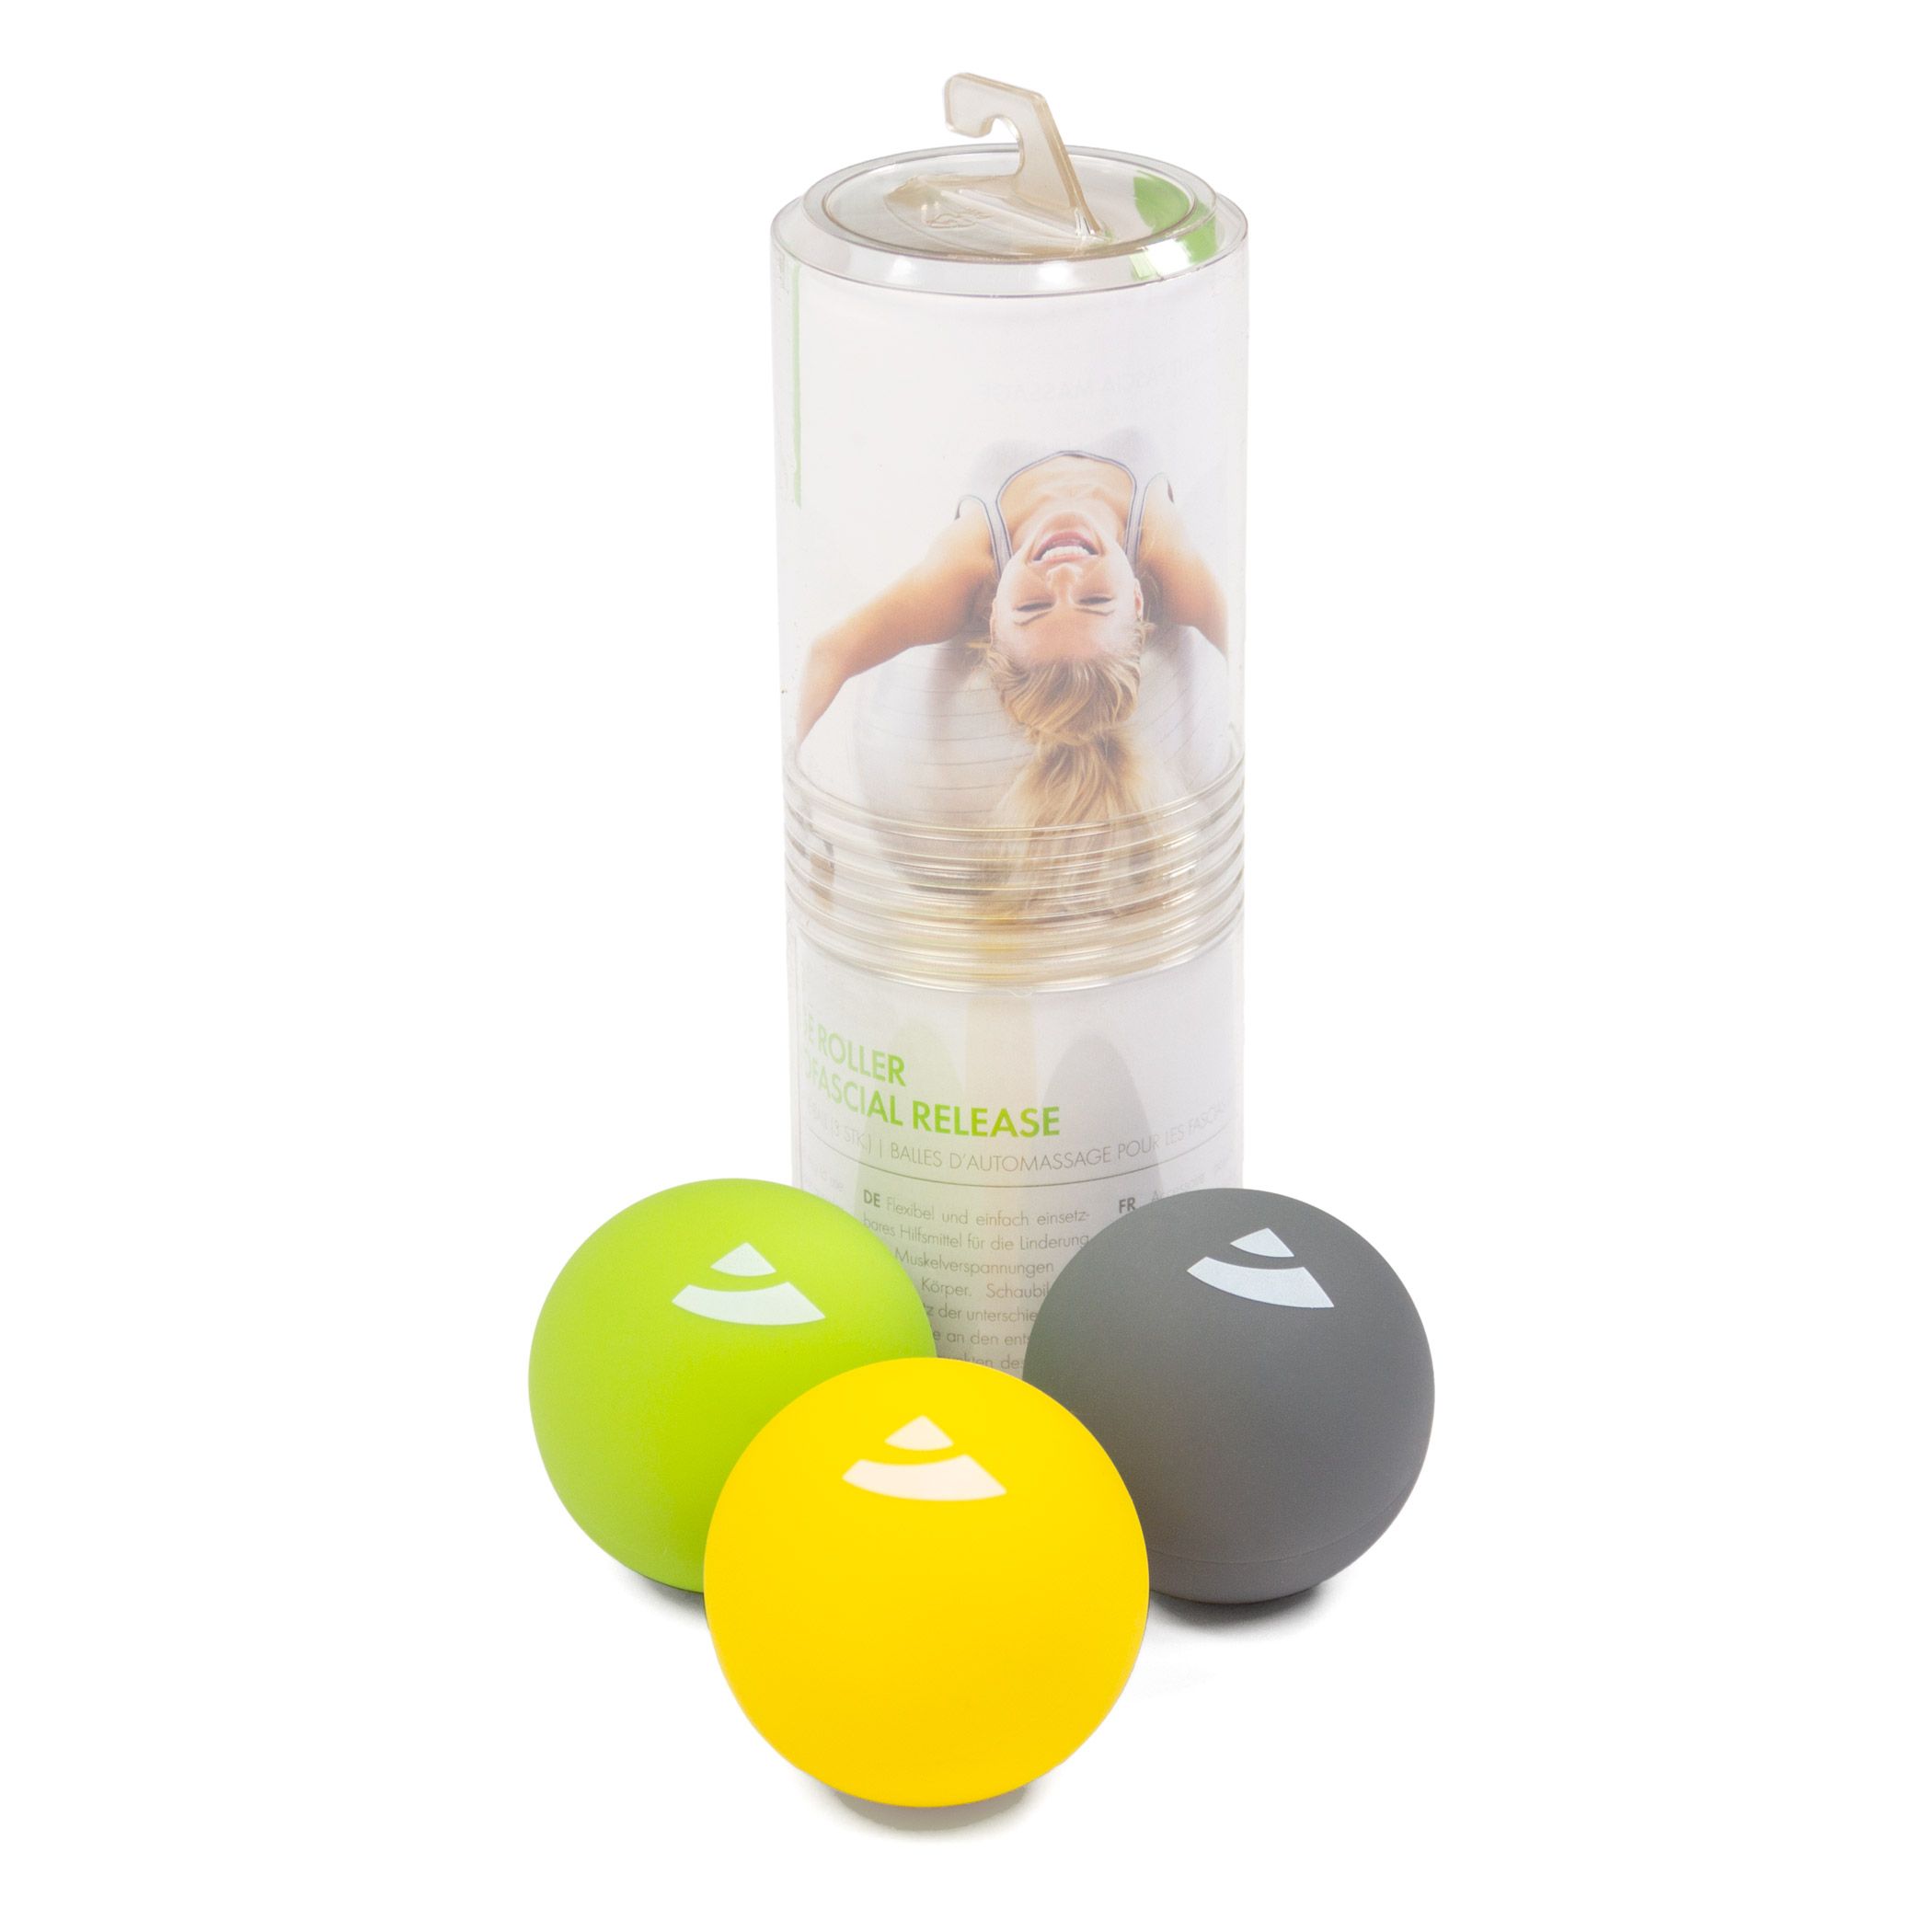 Faszien-Massage-Ball, 3er Set (soft-medium-hard)